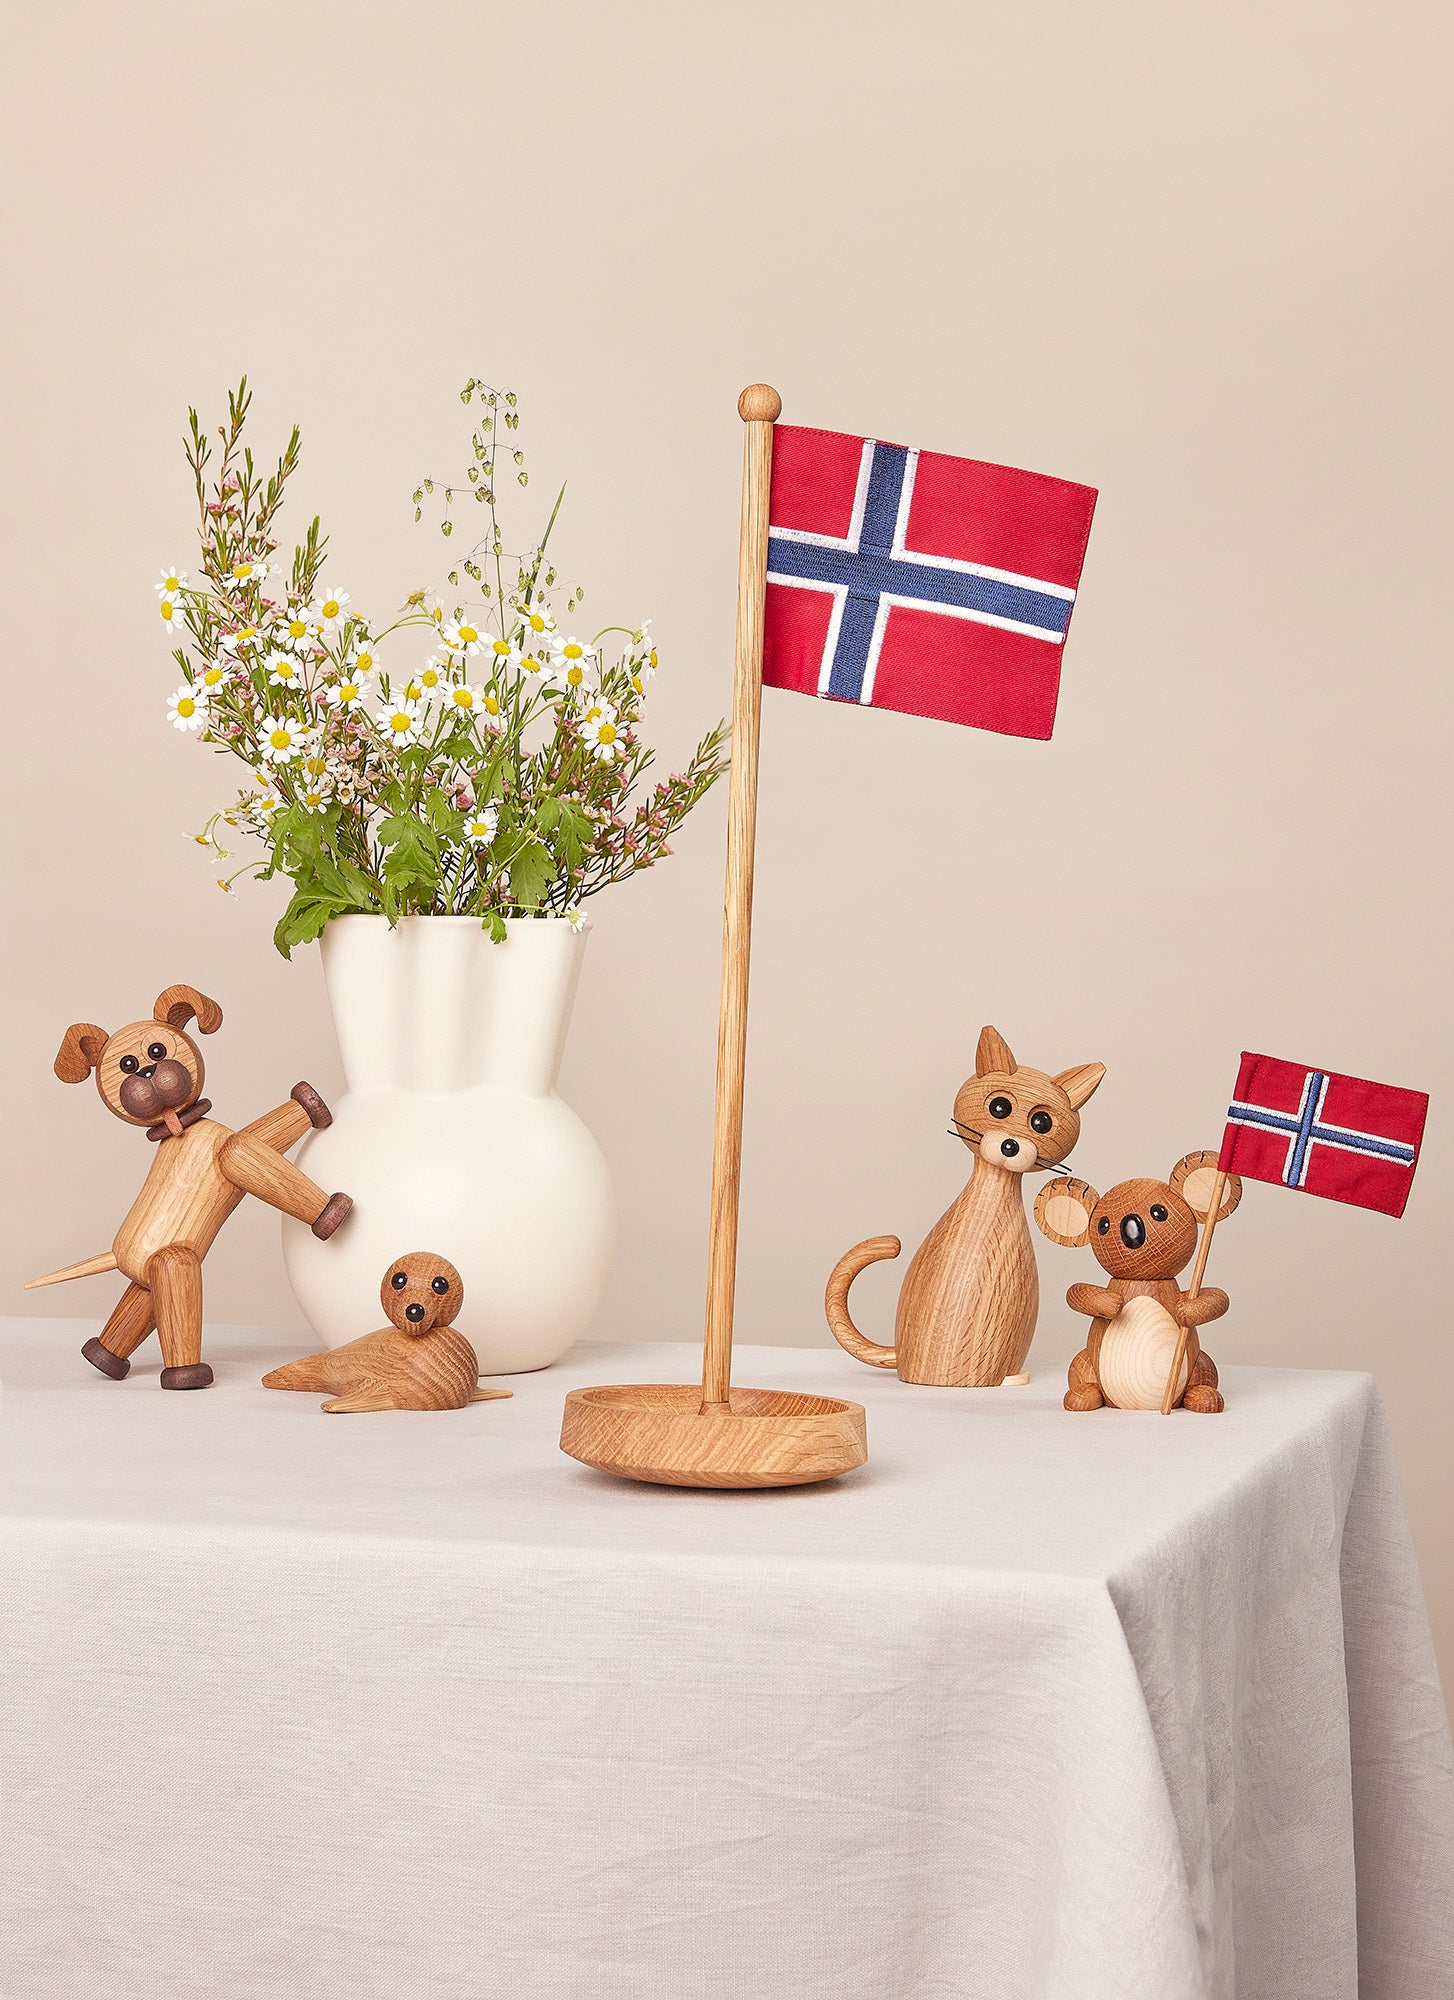 The Table Flag (Norwegian)